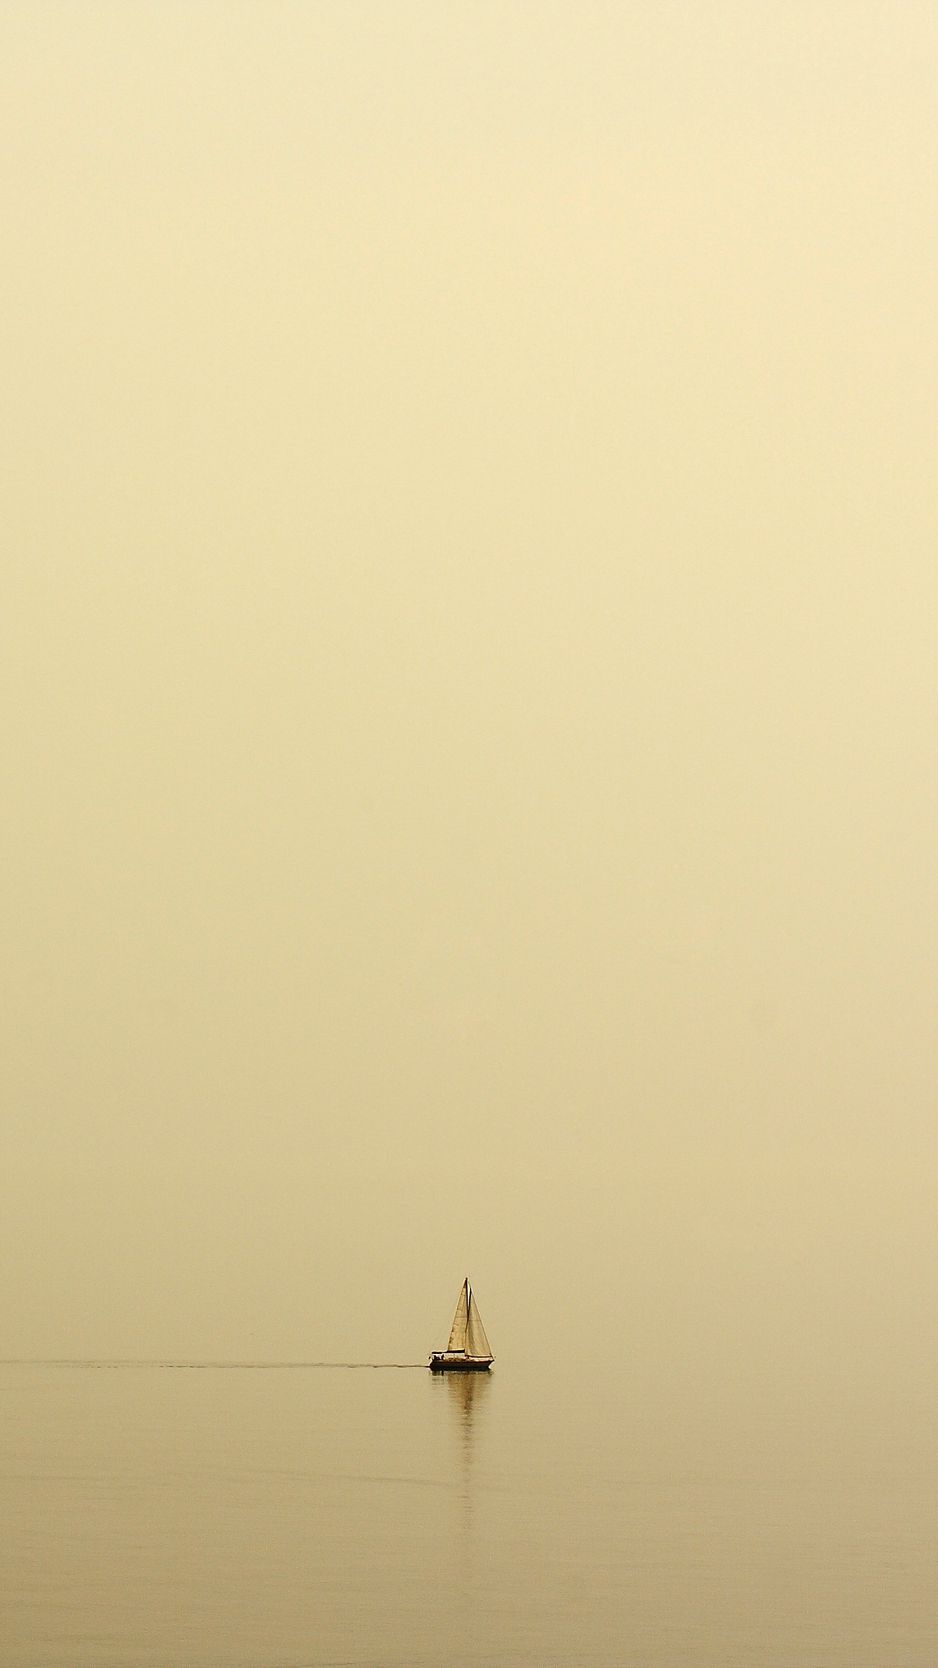 Download wallpaper 938x1668 sailboat, sea, fog, uniform, lonely